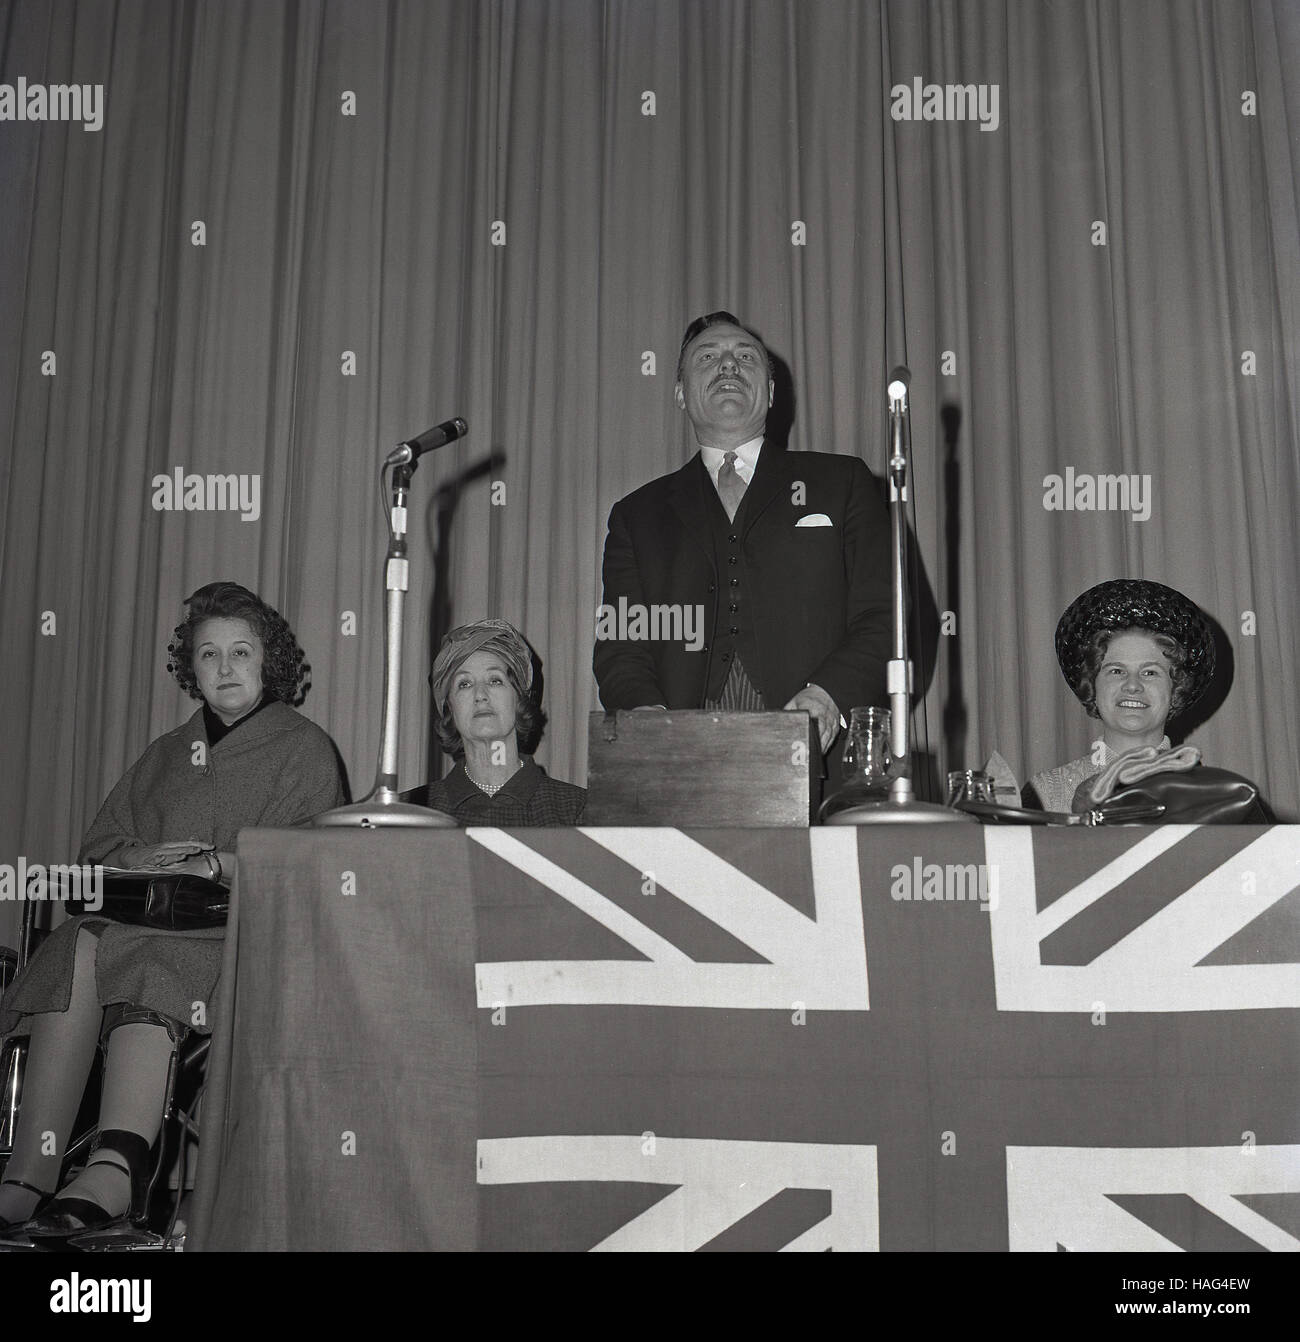 1965, historique, le politicien britannique Enoch Powell, avec sa femme à côté de lui, faisant un discours à l'Assemblée de l'Arrondissement Mairie, Aylesbury, Buckinghamshire, Angleterre. Banque D'Images